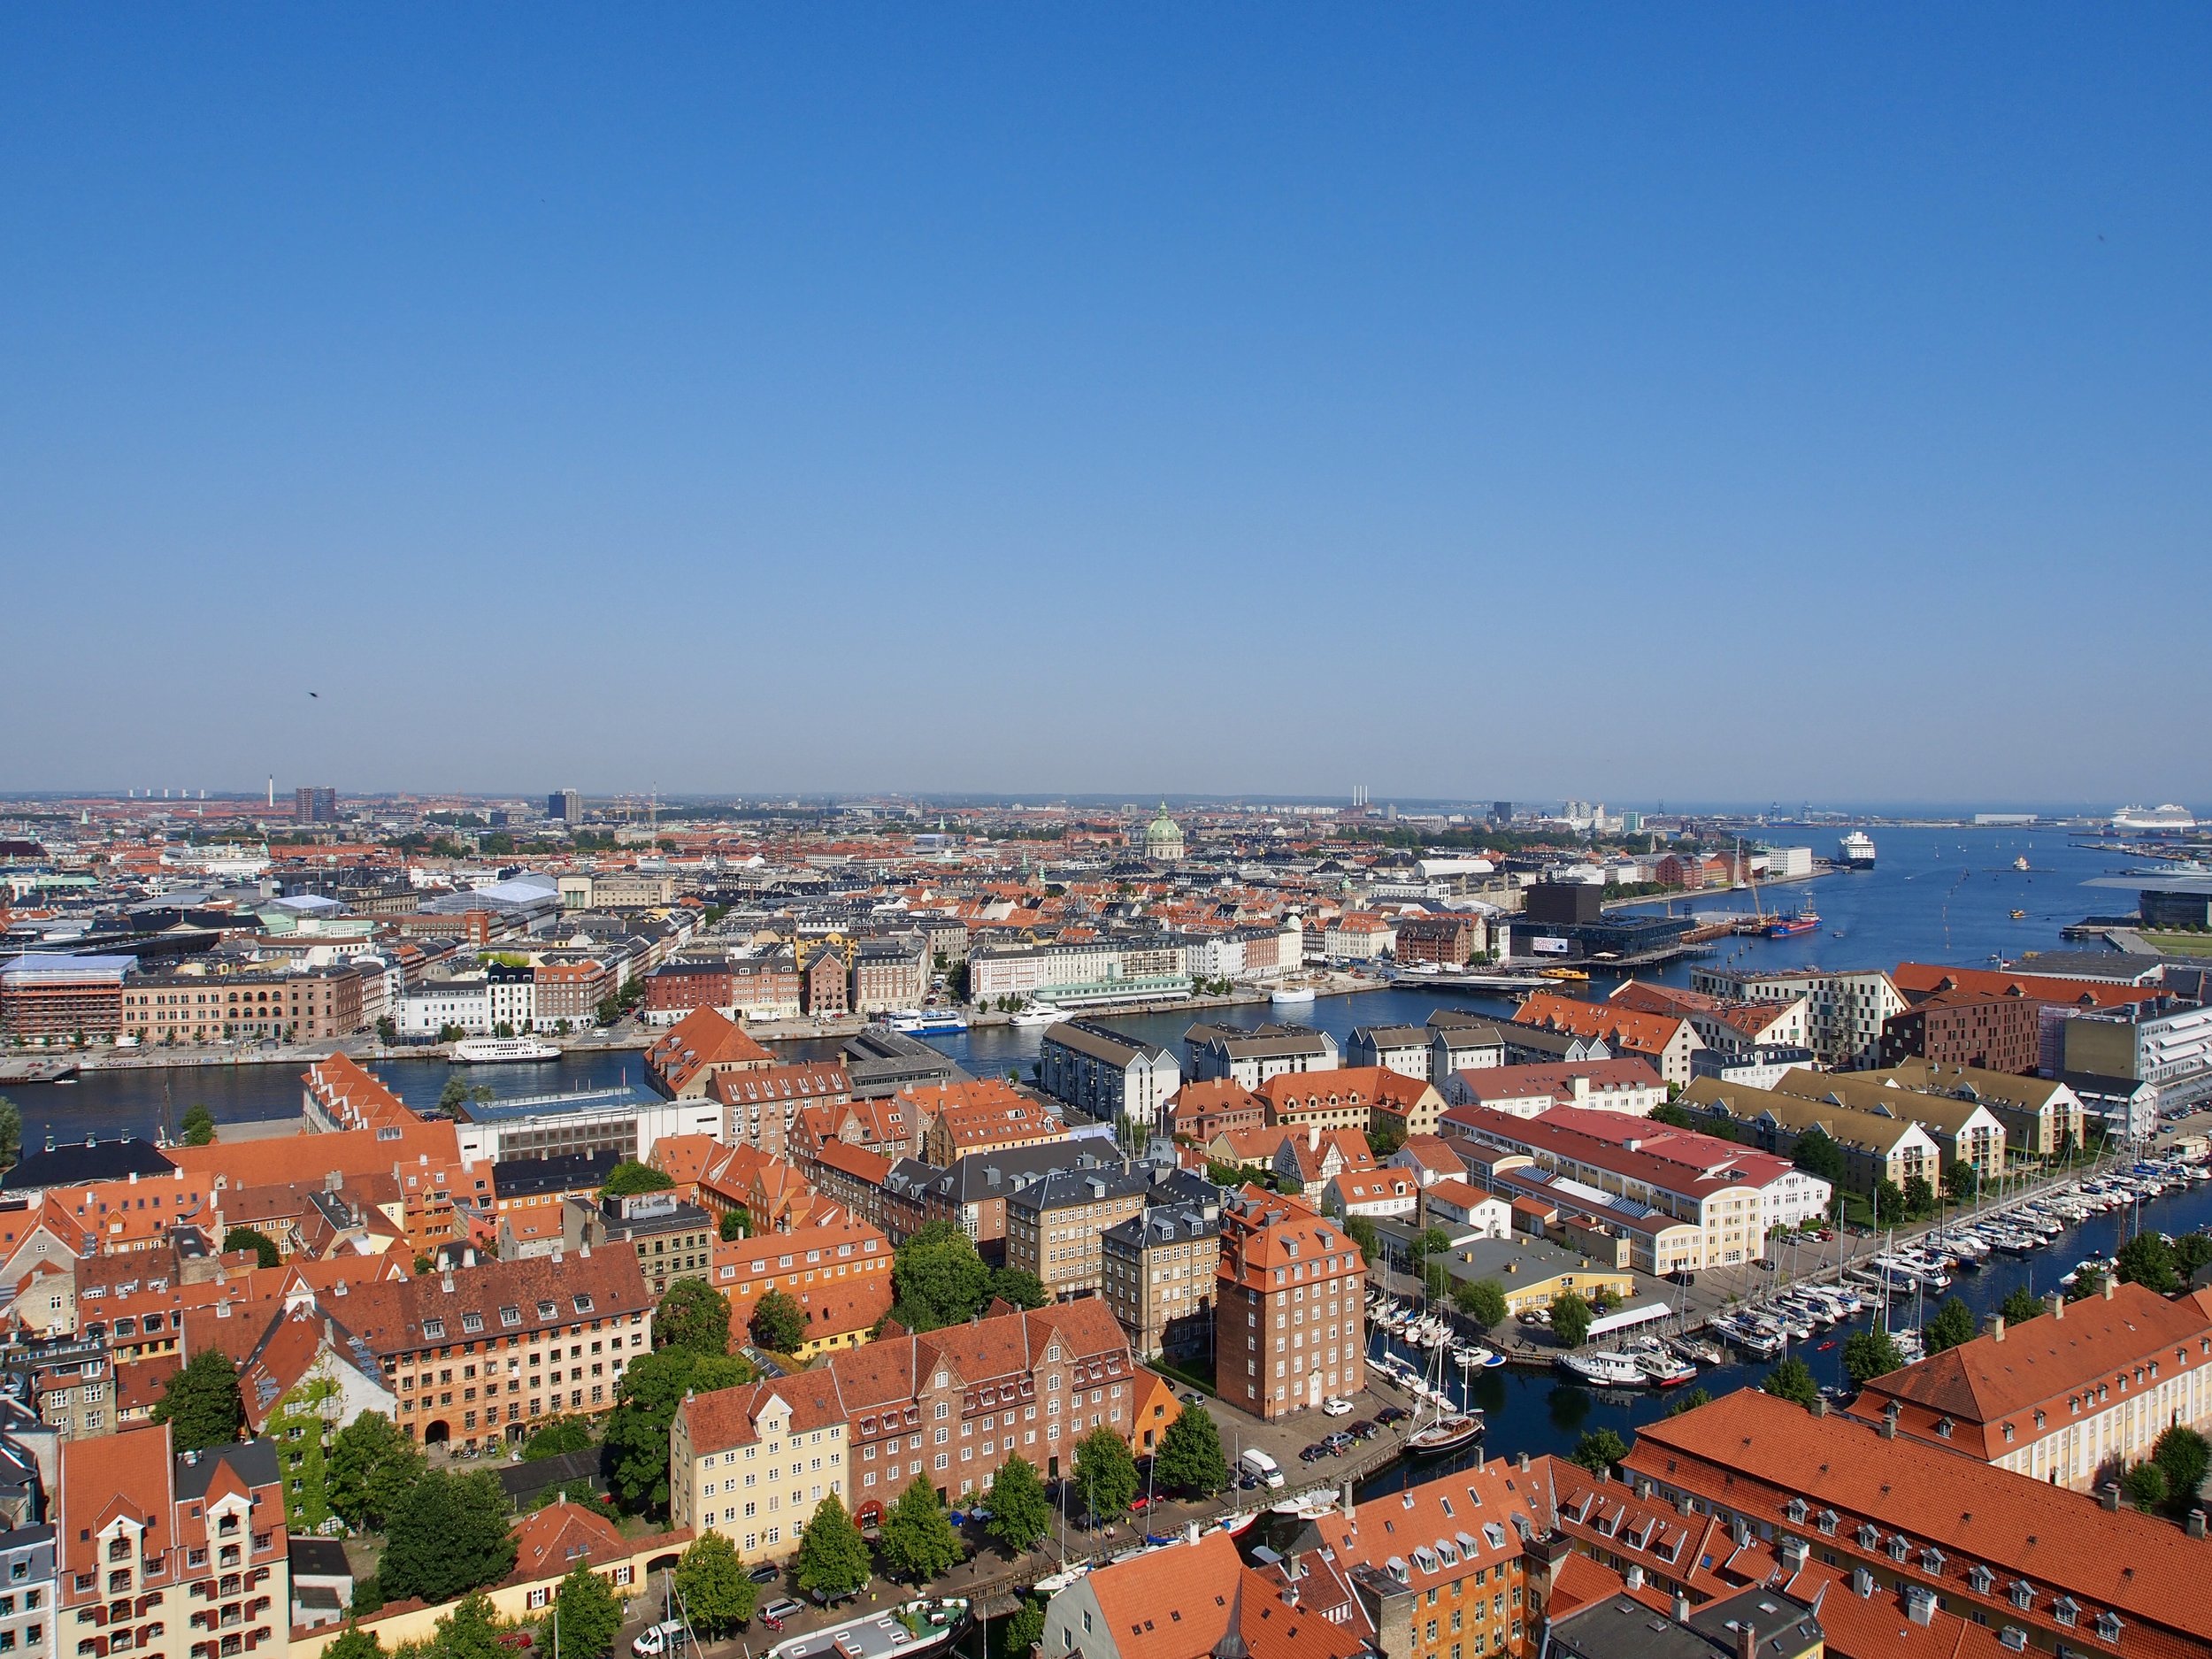 View overlooking Copenhagen